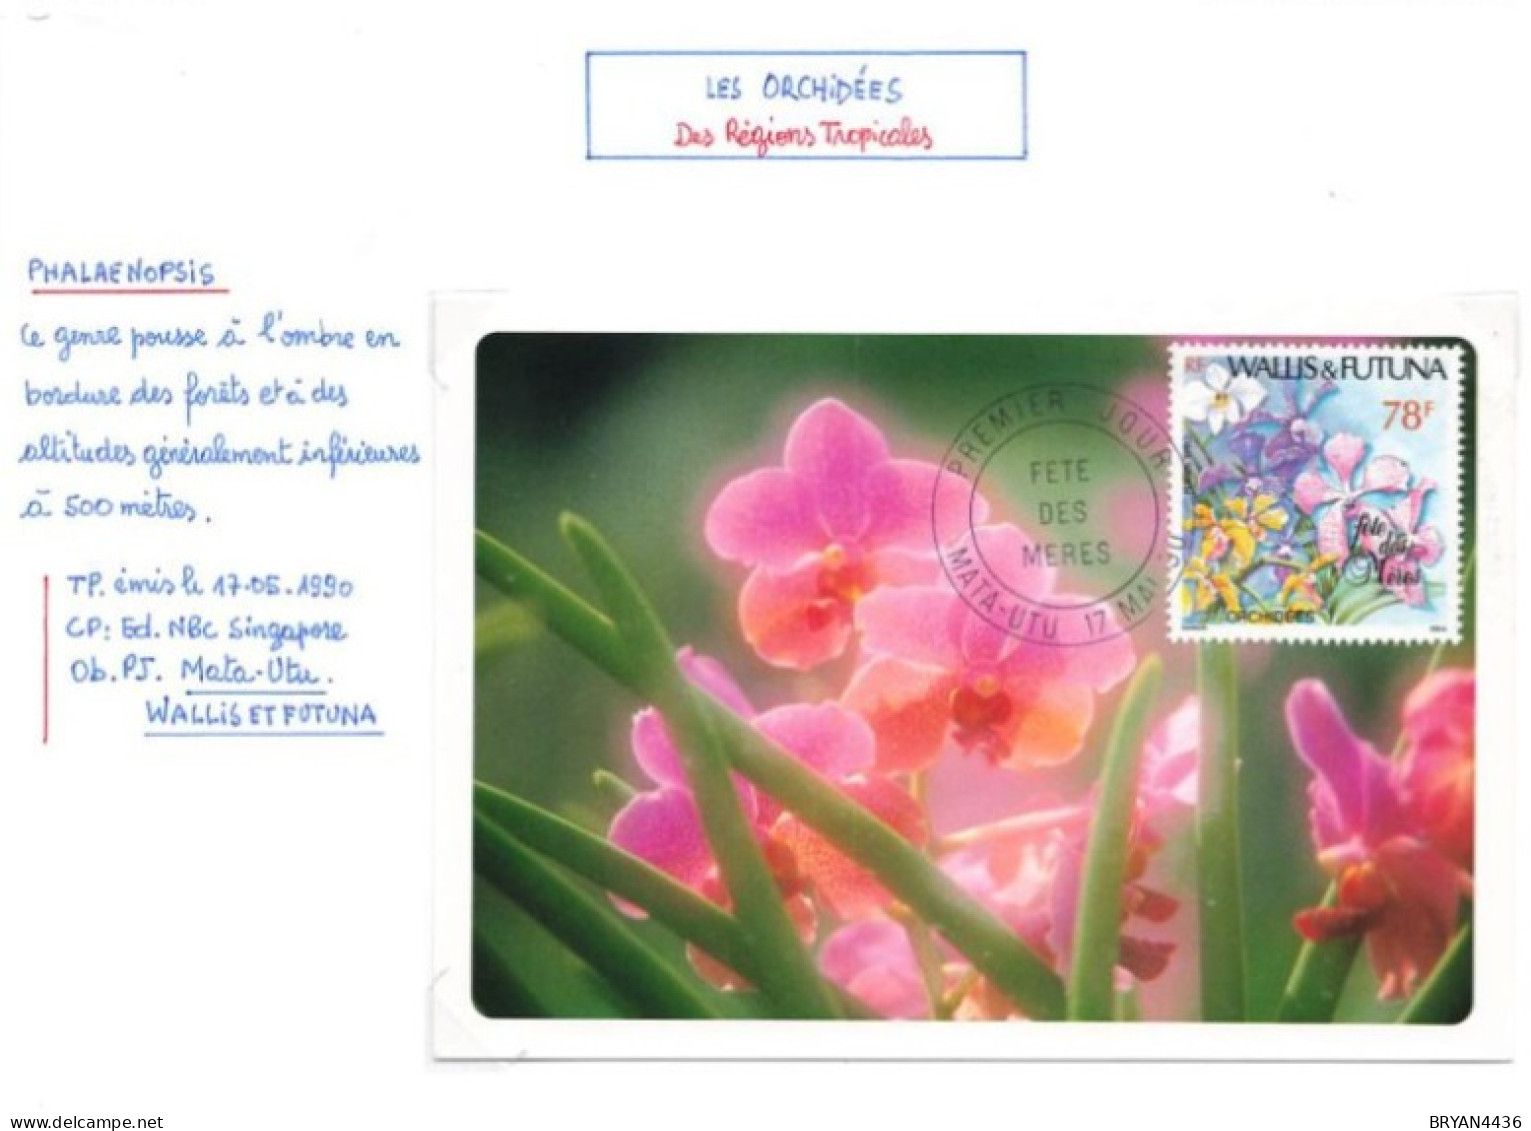 WALLIS & FUTUNA - Les ORCHIDES - CARTE MAXIMUM - Thème; FLEURS - MATA-HUTU - 1990 - TRES BON ETAT - Cartoline Maximum